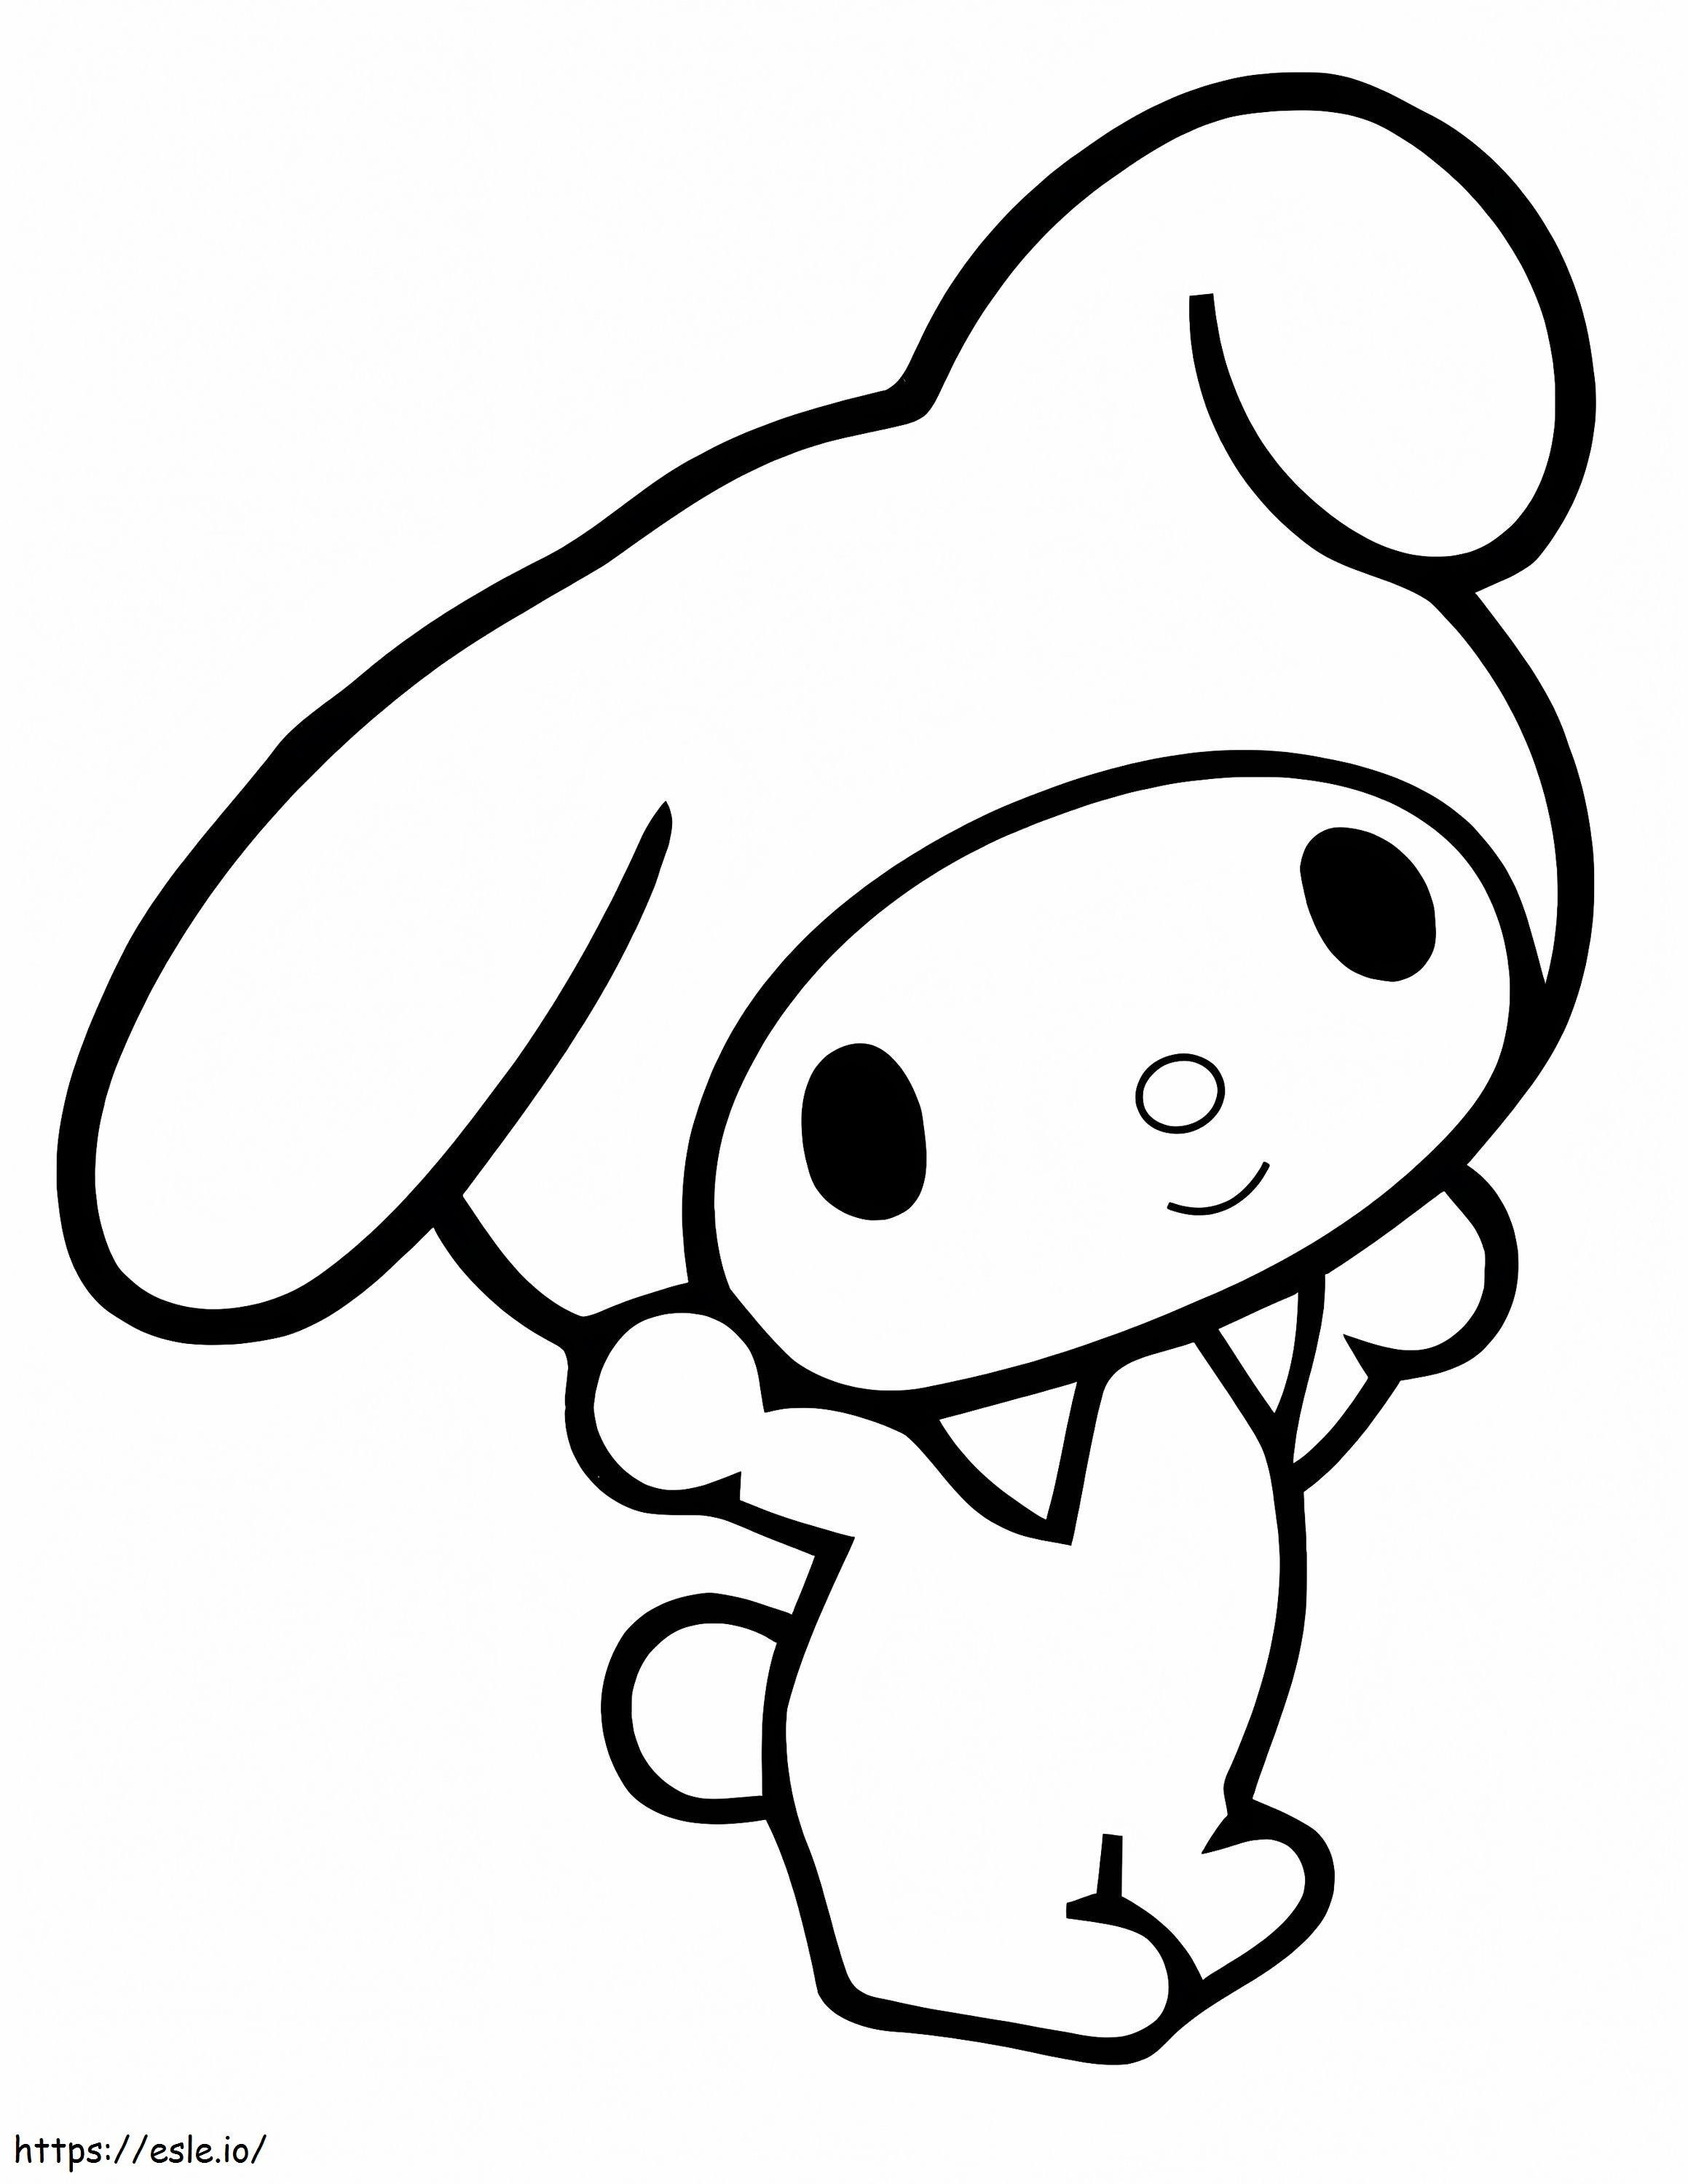 Kawaii Character coloring page